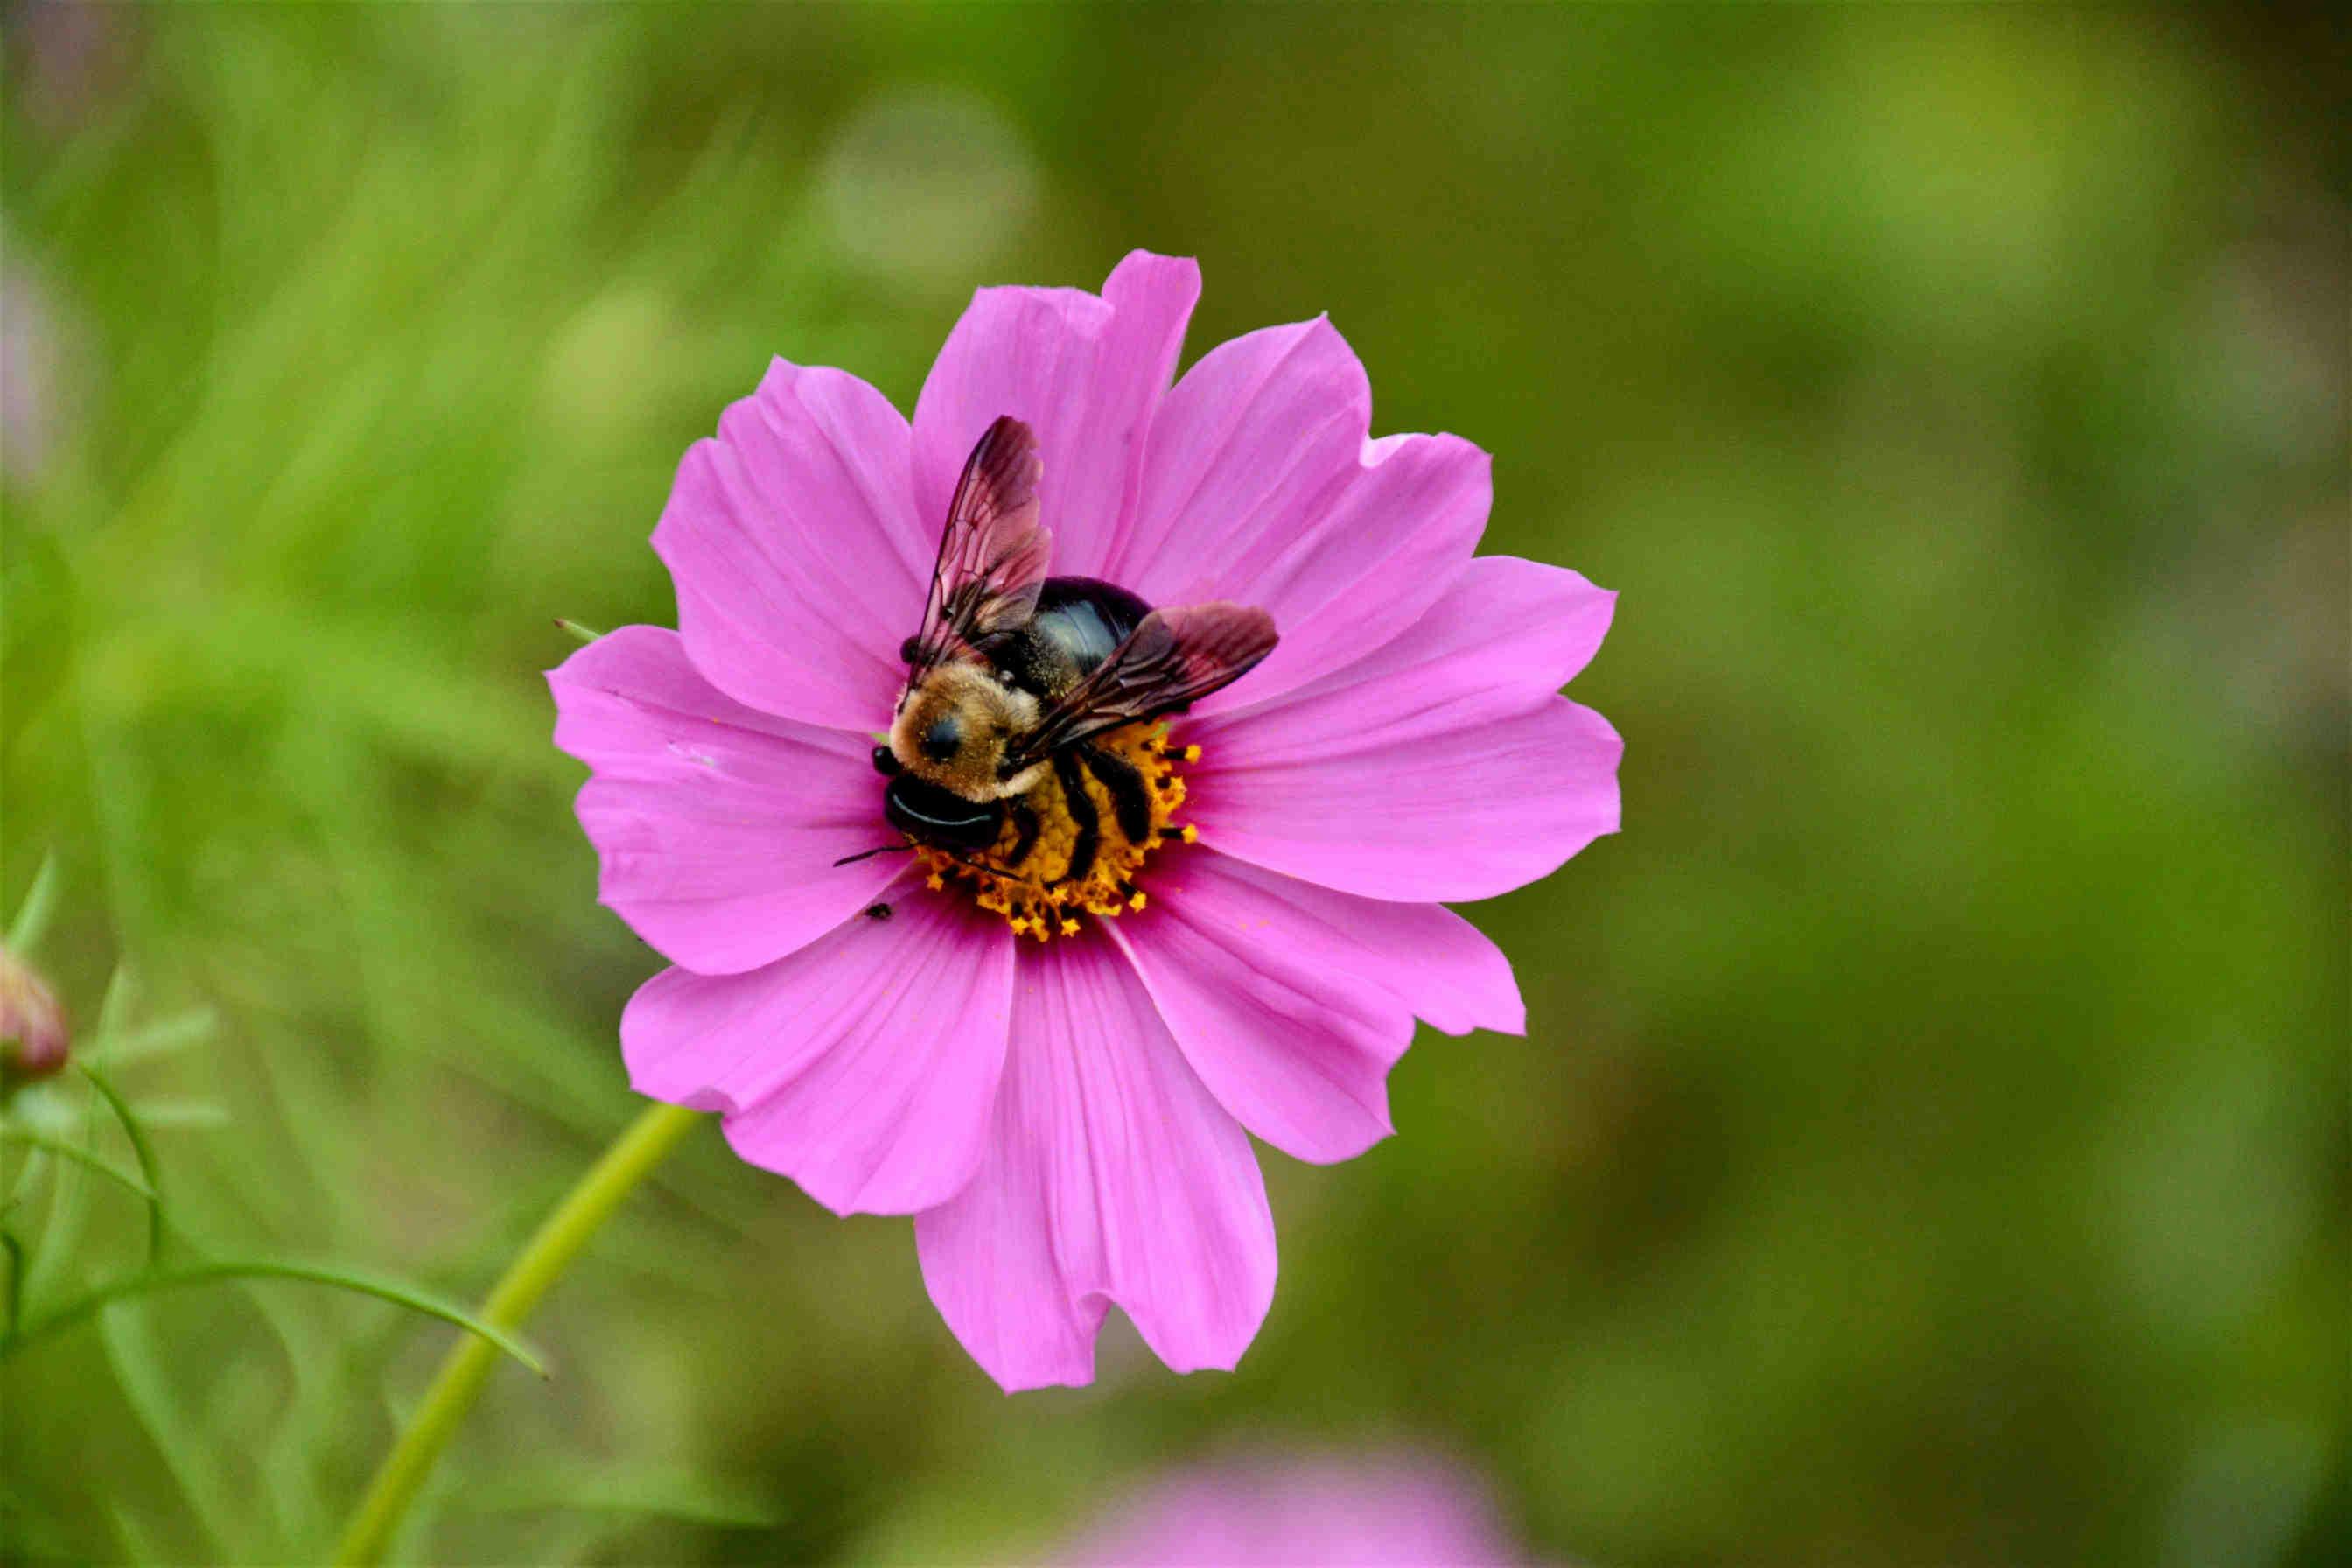 Les fleurs se sont adaptées au système visuel des abeilles